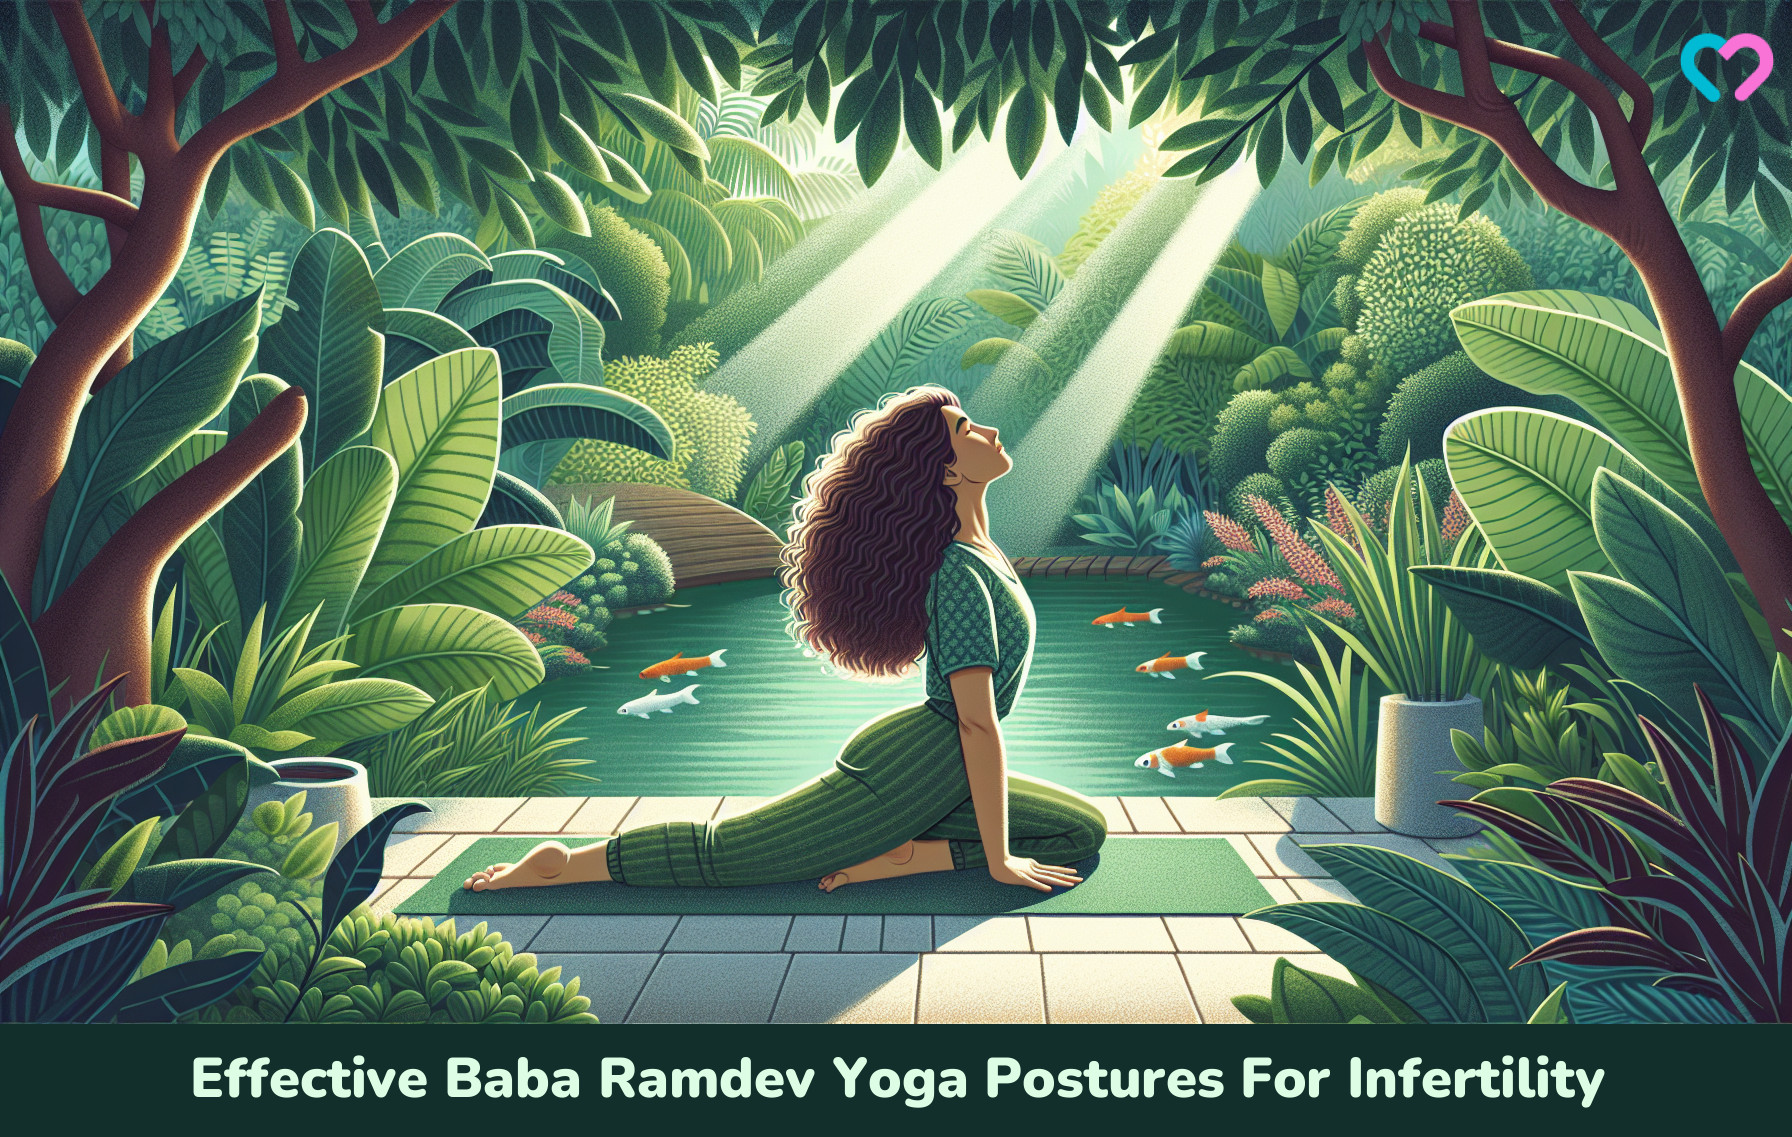 Baba Ramdev Yoga Postures for fertility_illustration